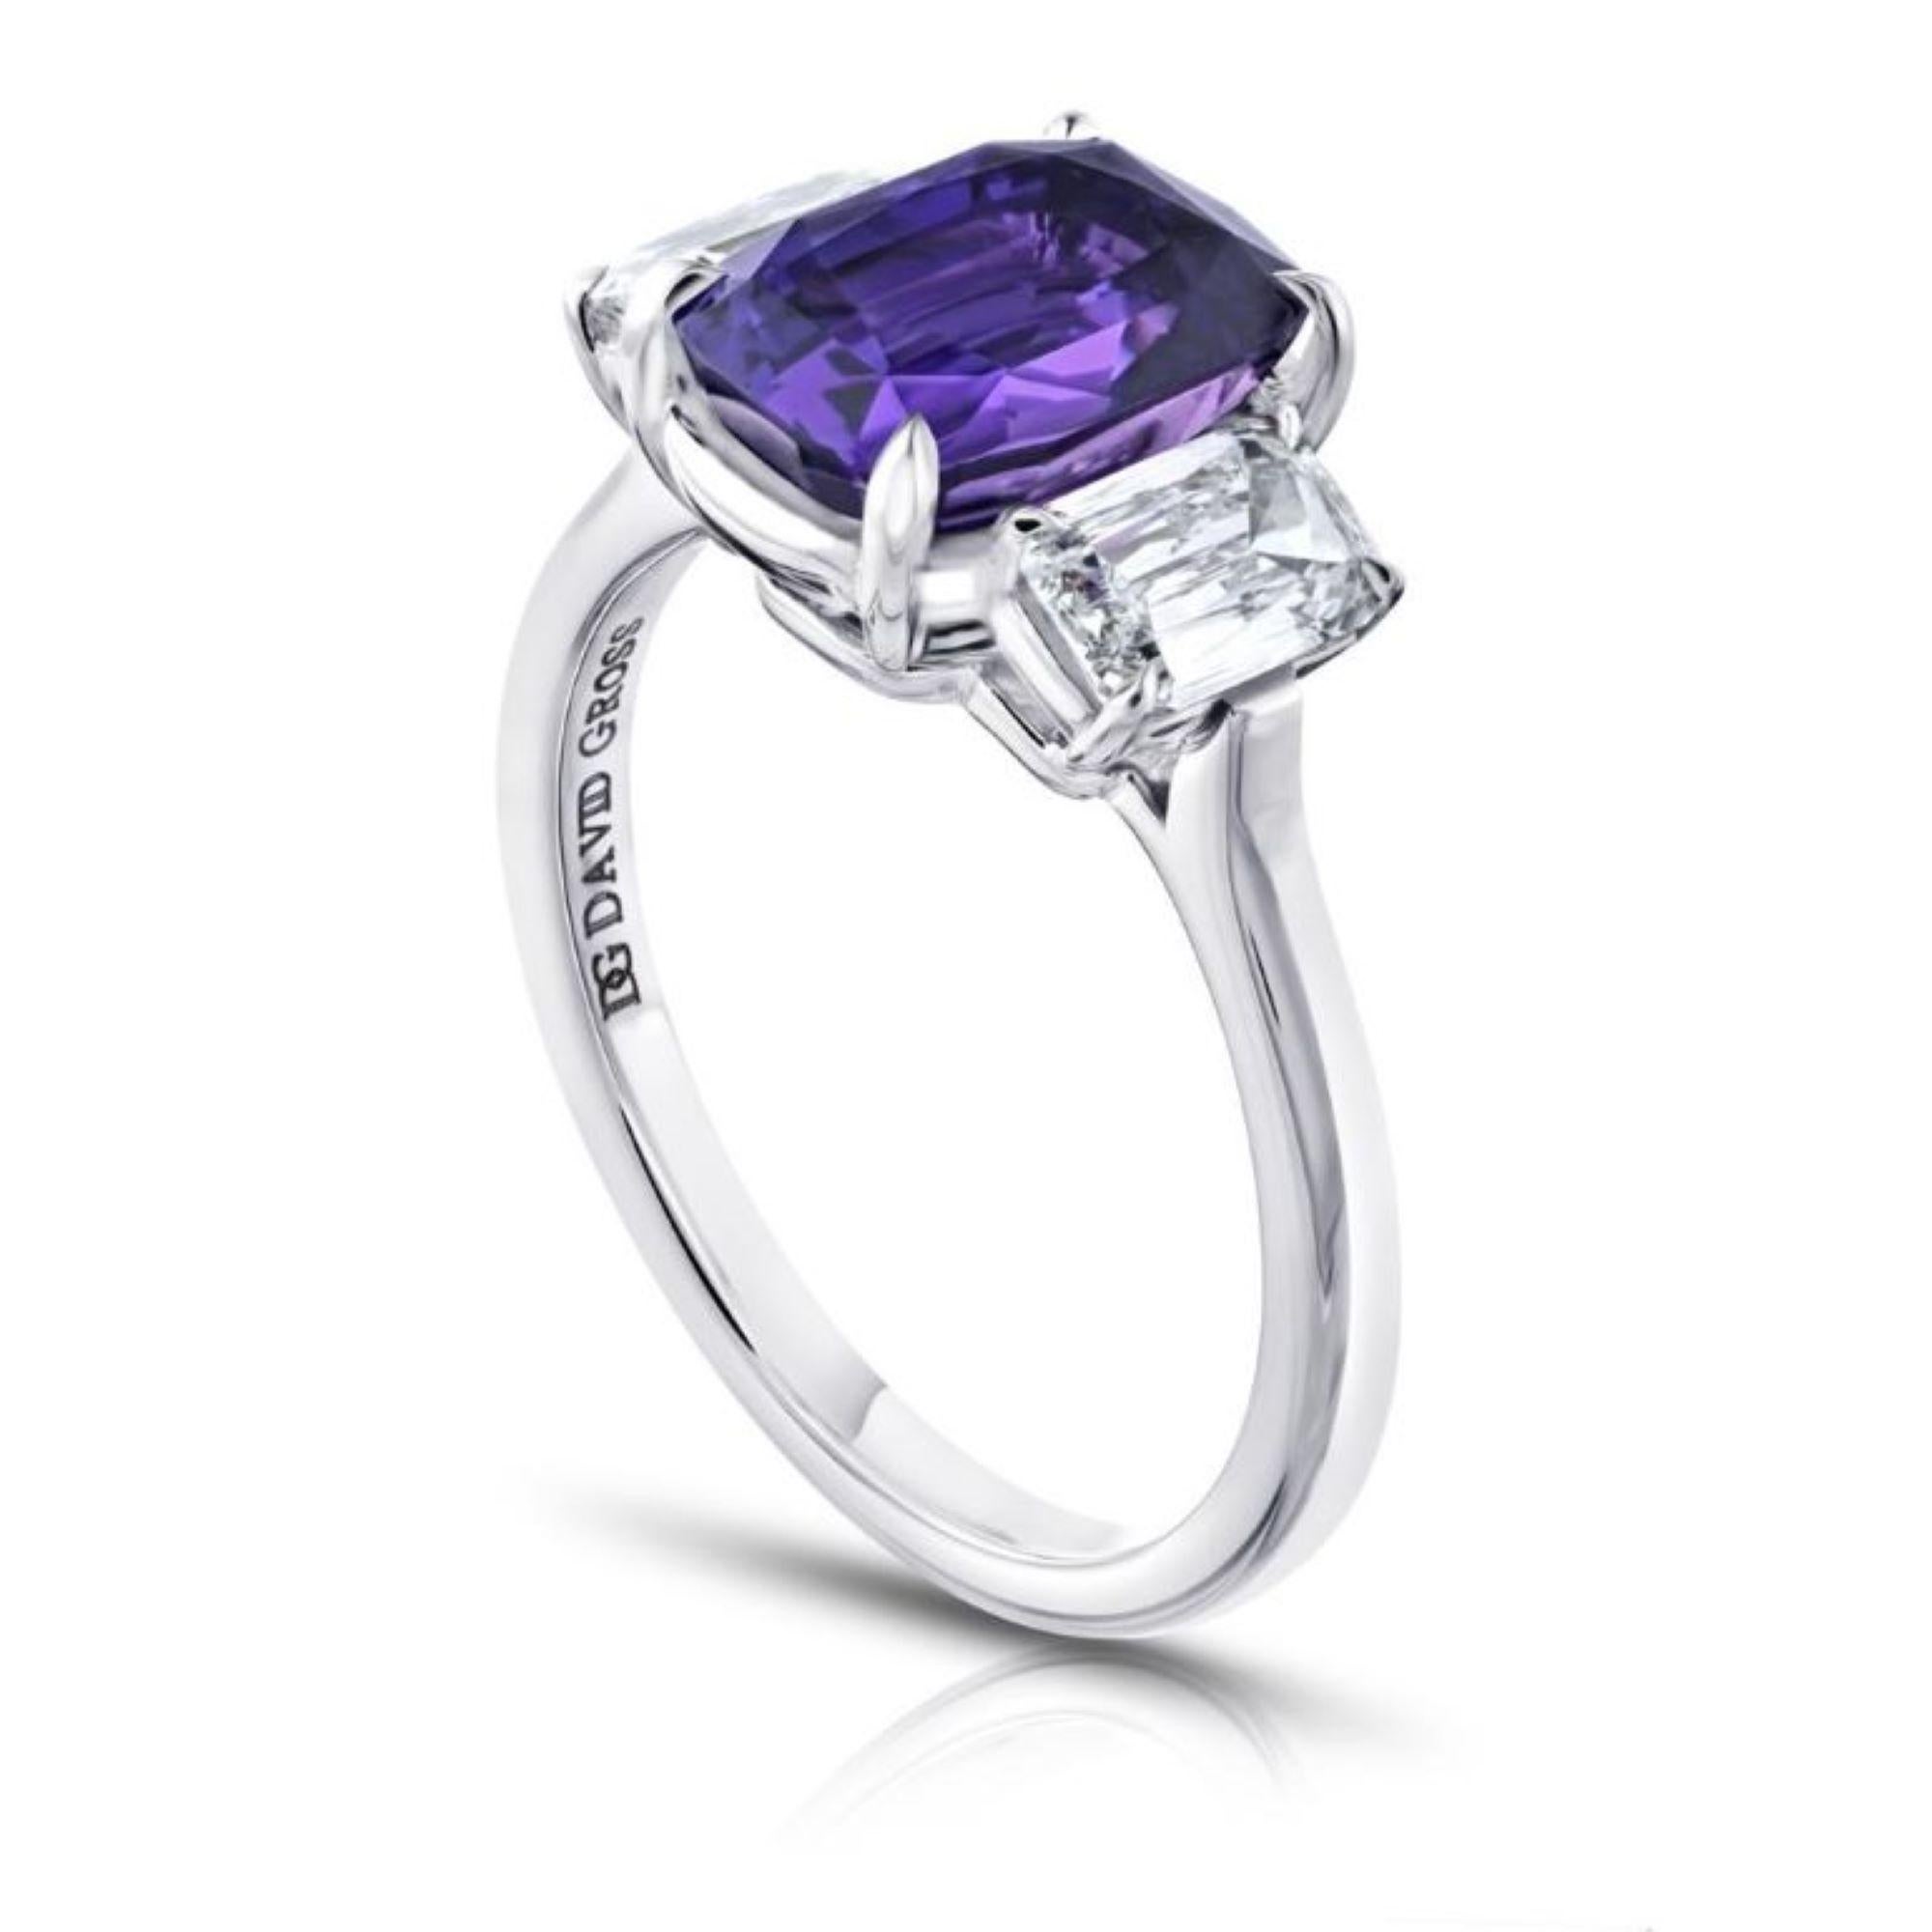 3,72 Karat Cushion Purple Sapphire mit zwei Cushion Diamonds .97 Karat in einem handgefertigten Platinring gefasst